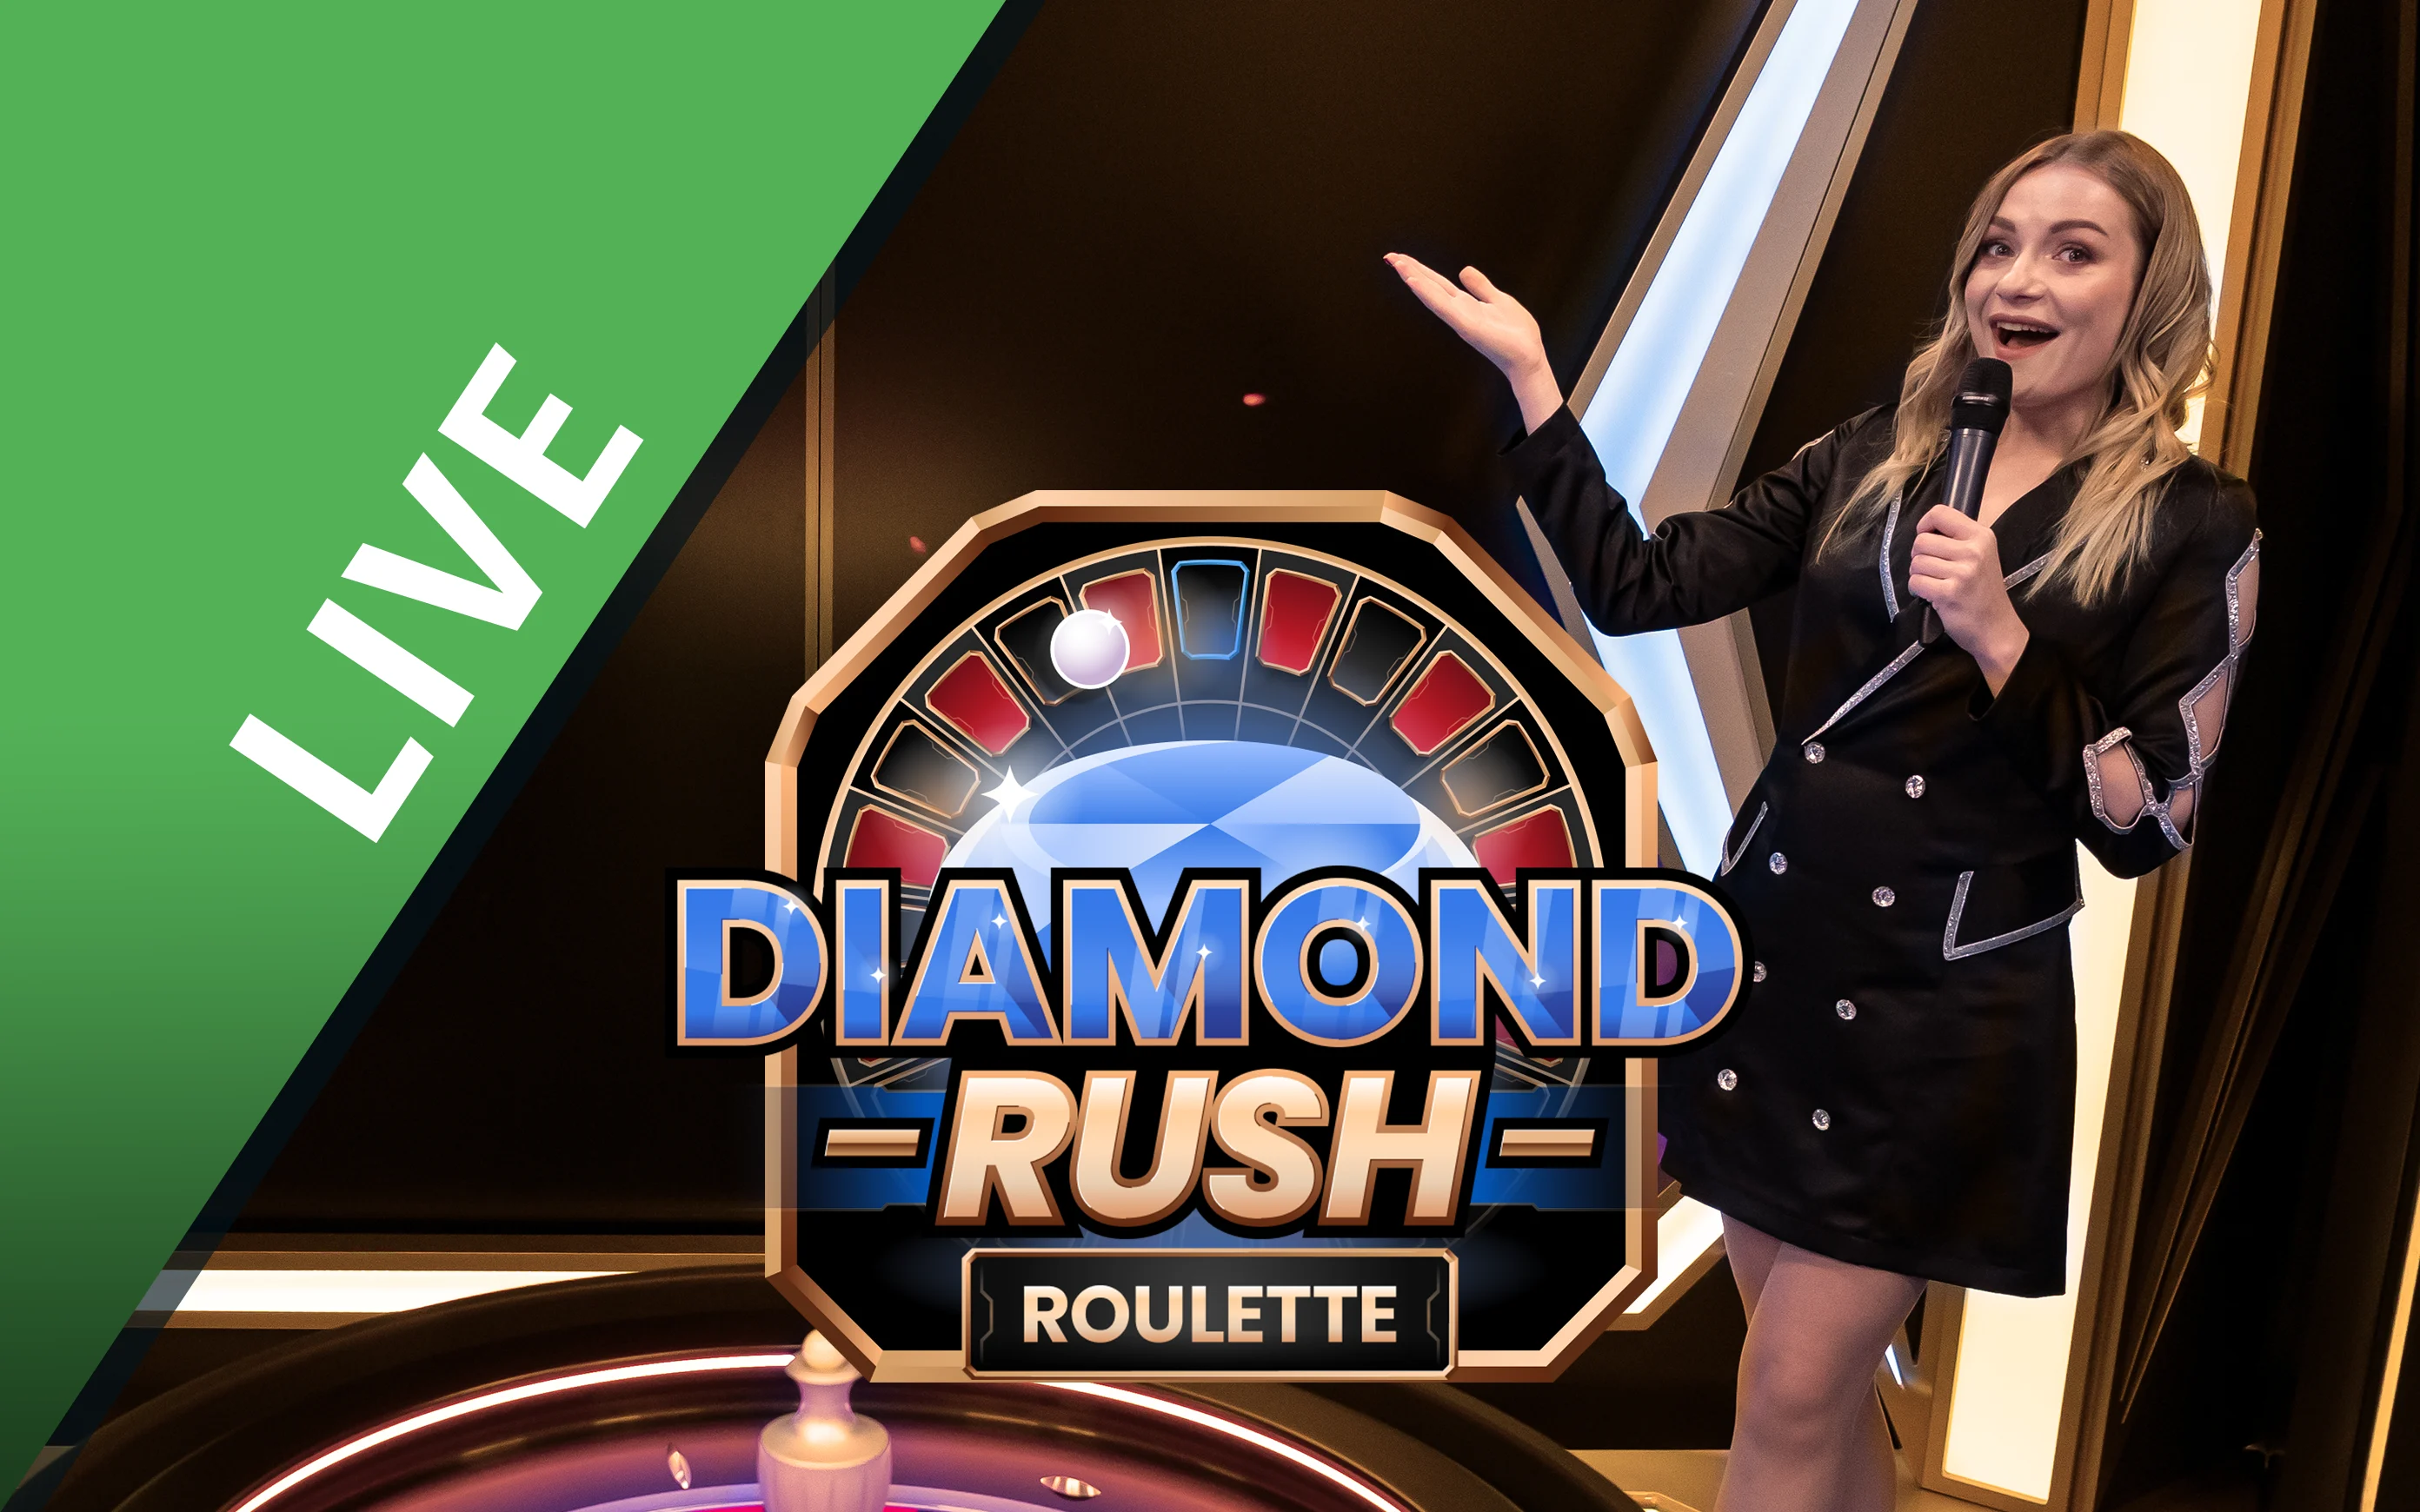 Gioca a Diamond Rush Roulette sul casino online Starcasino.be